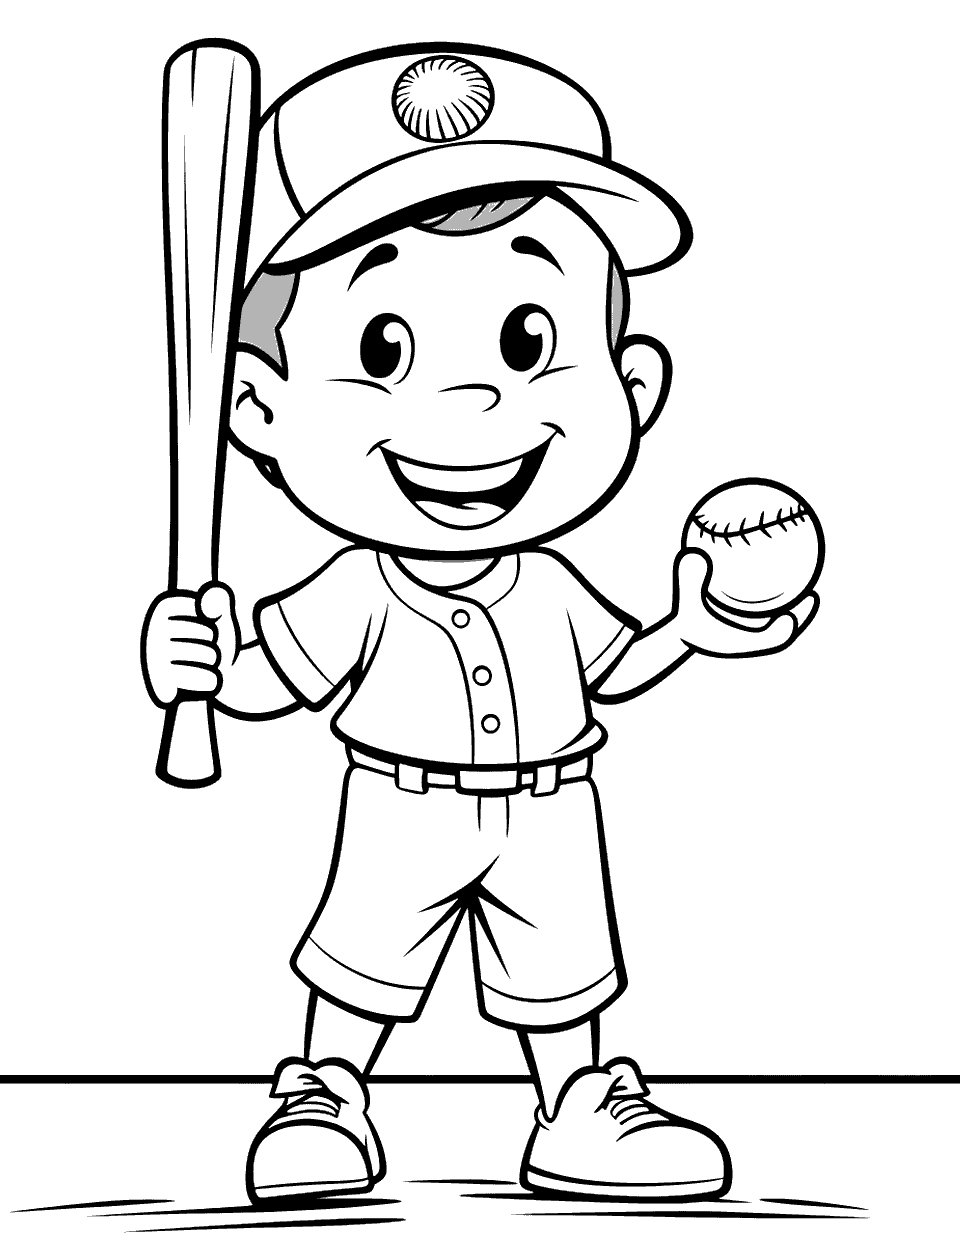 Baseball Mascot Coloring Page - A mascot smiling and holding a baseball bat and a ball.